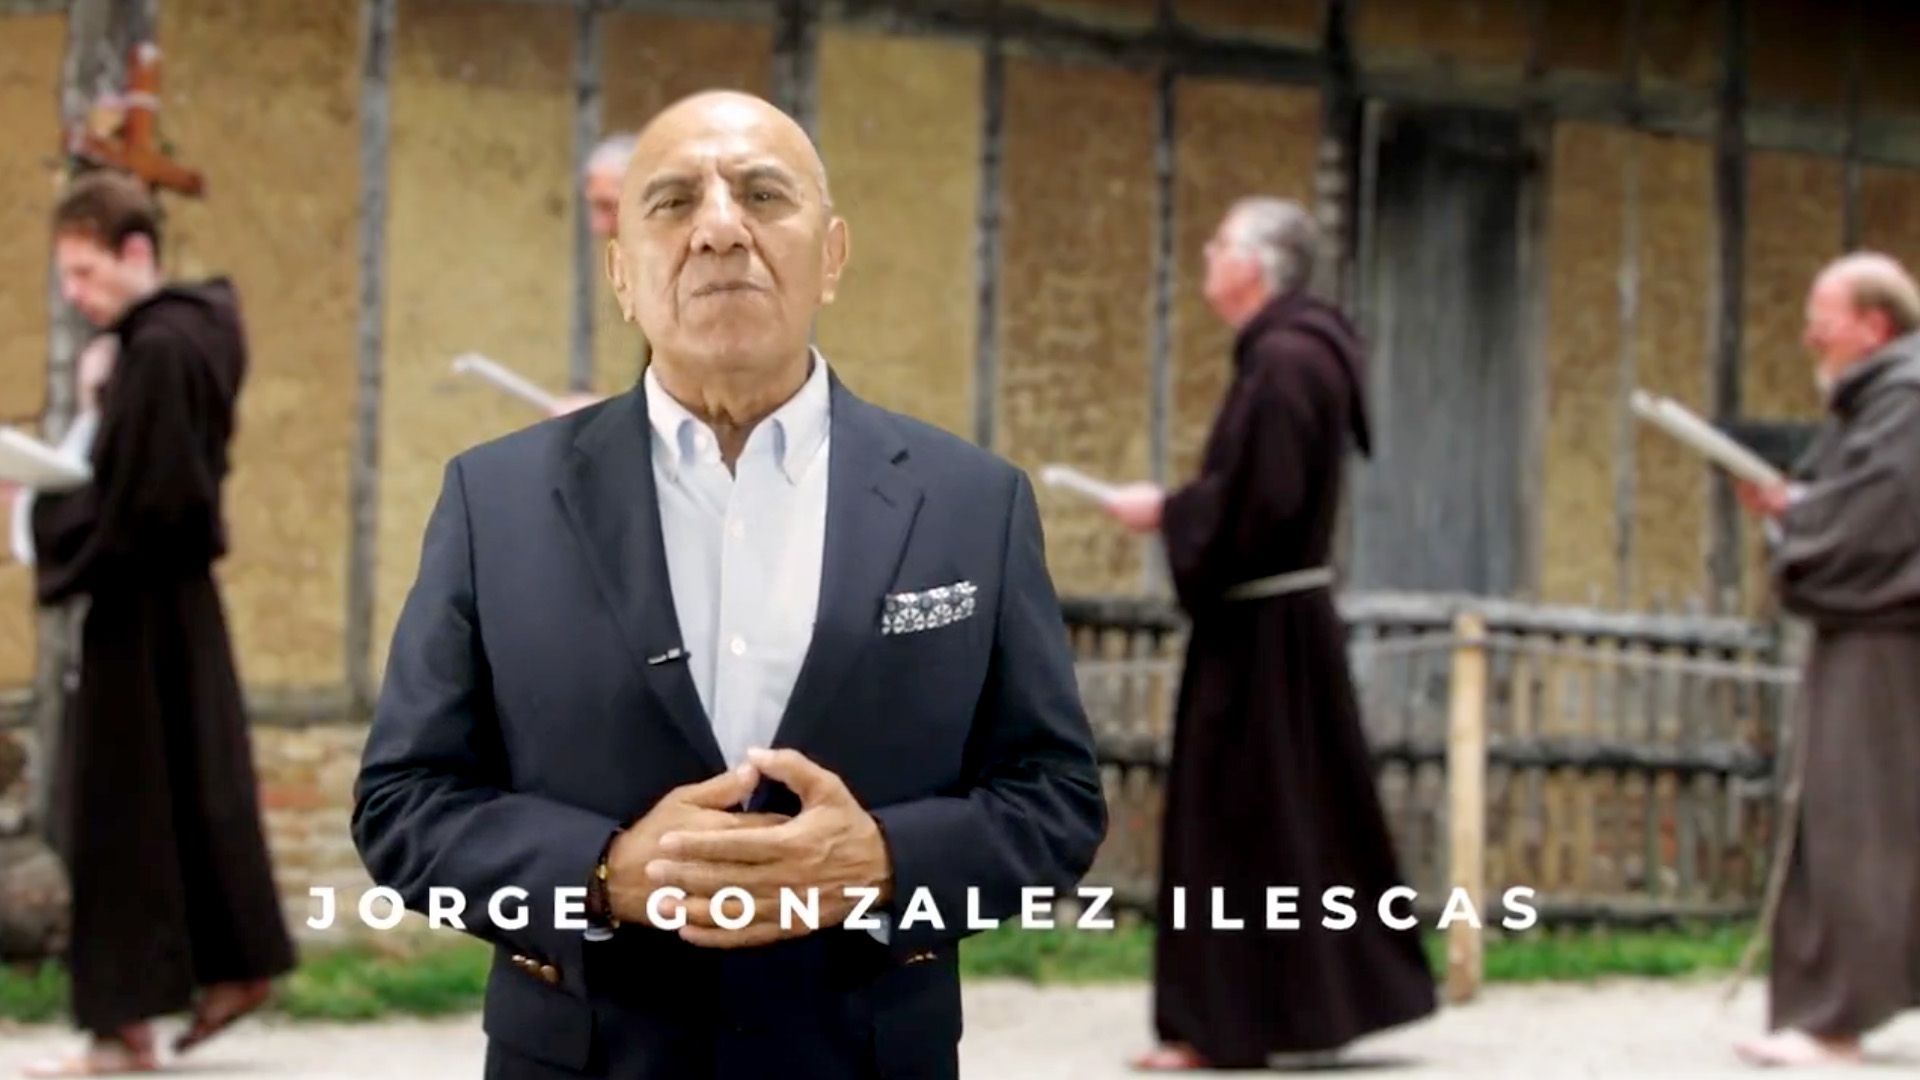 ▶ ESPACIO DE OPINIÓN … con Jorge González Ilescas – agosto 30